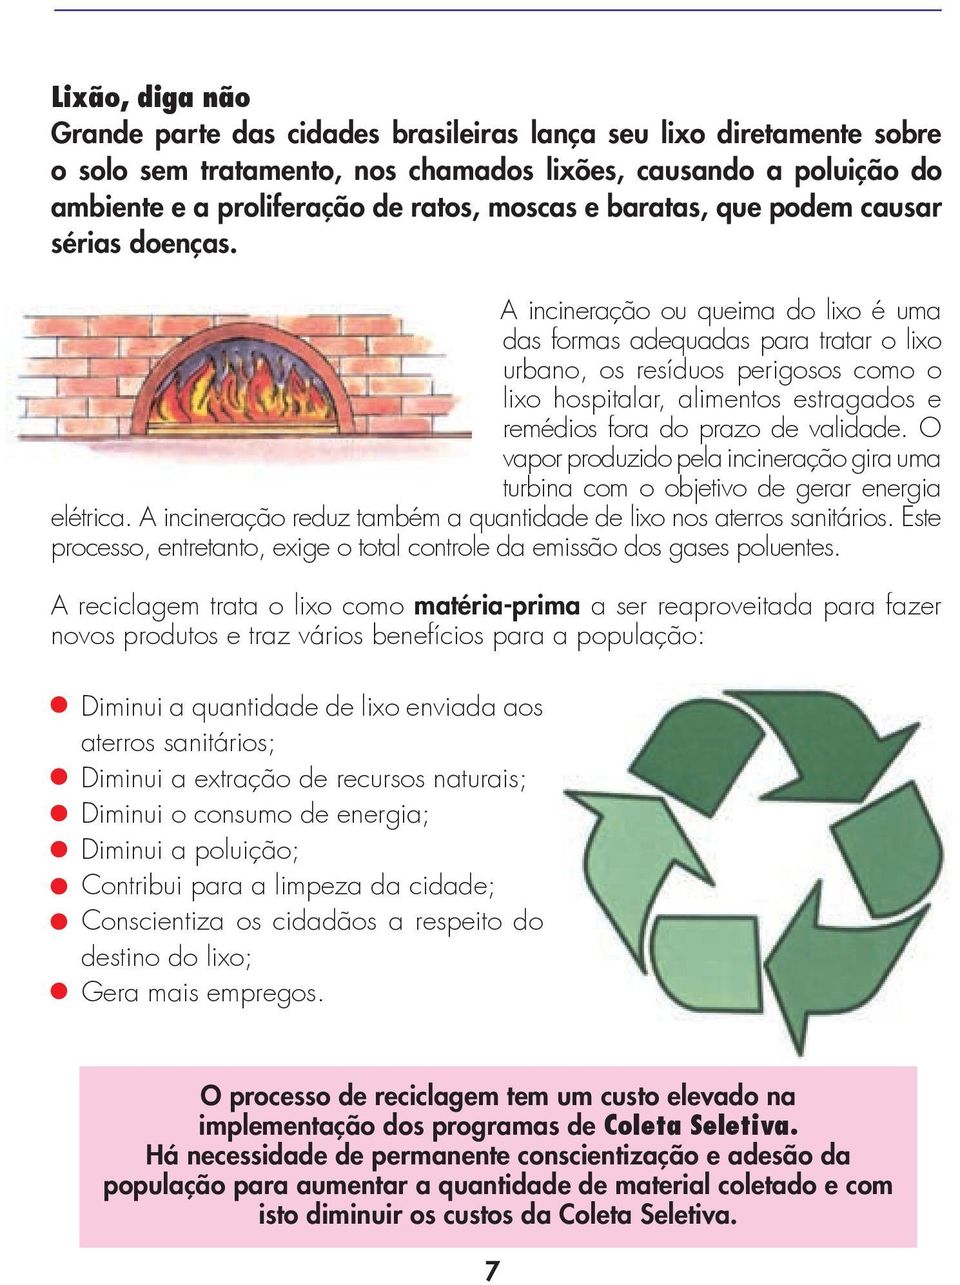 A incineração ou queima do lixo é uma das formas adequadas para tratar o lixo urbano, os resíduos perigosos como o lixo hospitalar, alimentos estragados e remédios fora do prazo de validade.